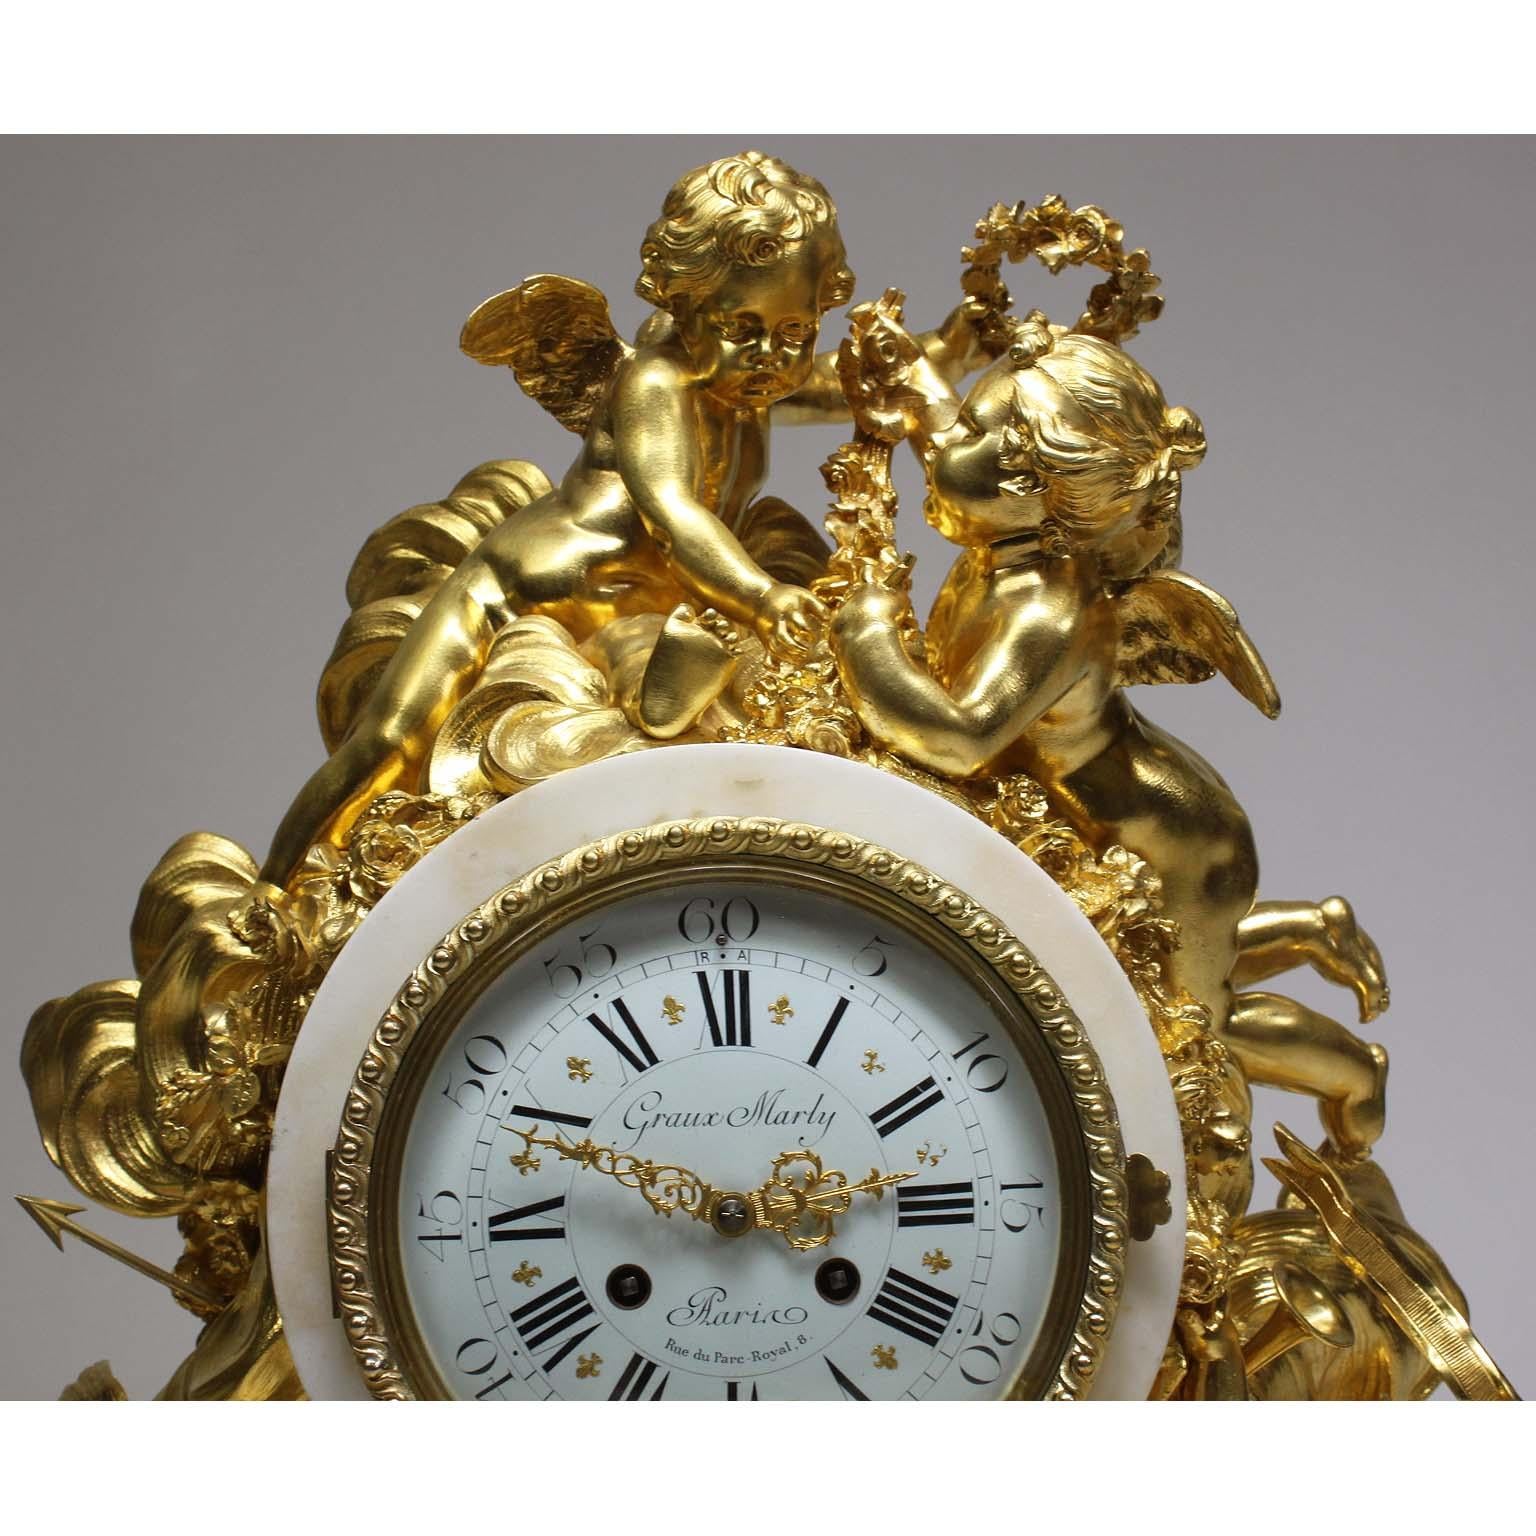 Importante et somptueuse pendule de cheminée en bronze doré et marbre blanc de style Louis XV, attribuée à Alfred-Emmanuel-Louis Beurdeley, la fonte et la dorure étant de Graux-Marly, Paris, le mouvement de P. Marti et Cie. Le grand et